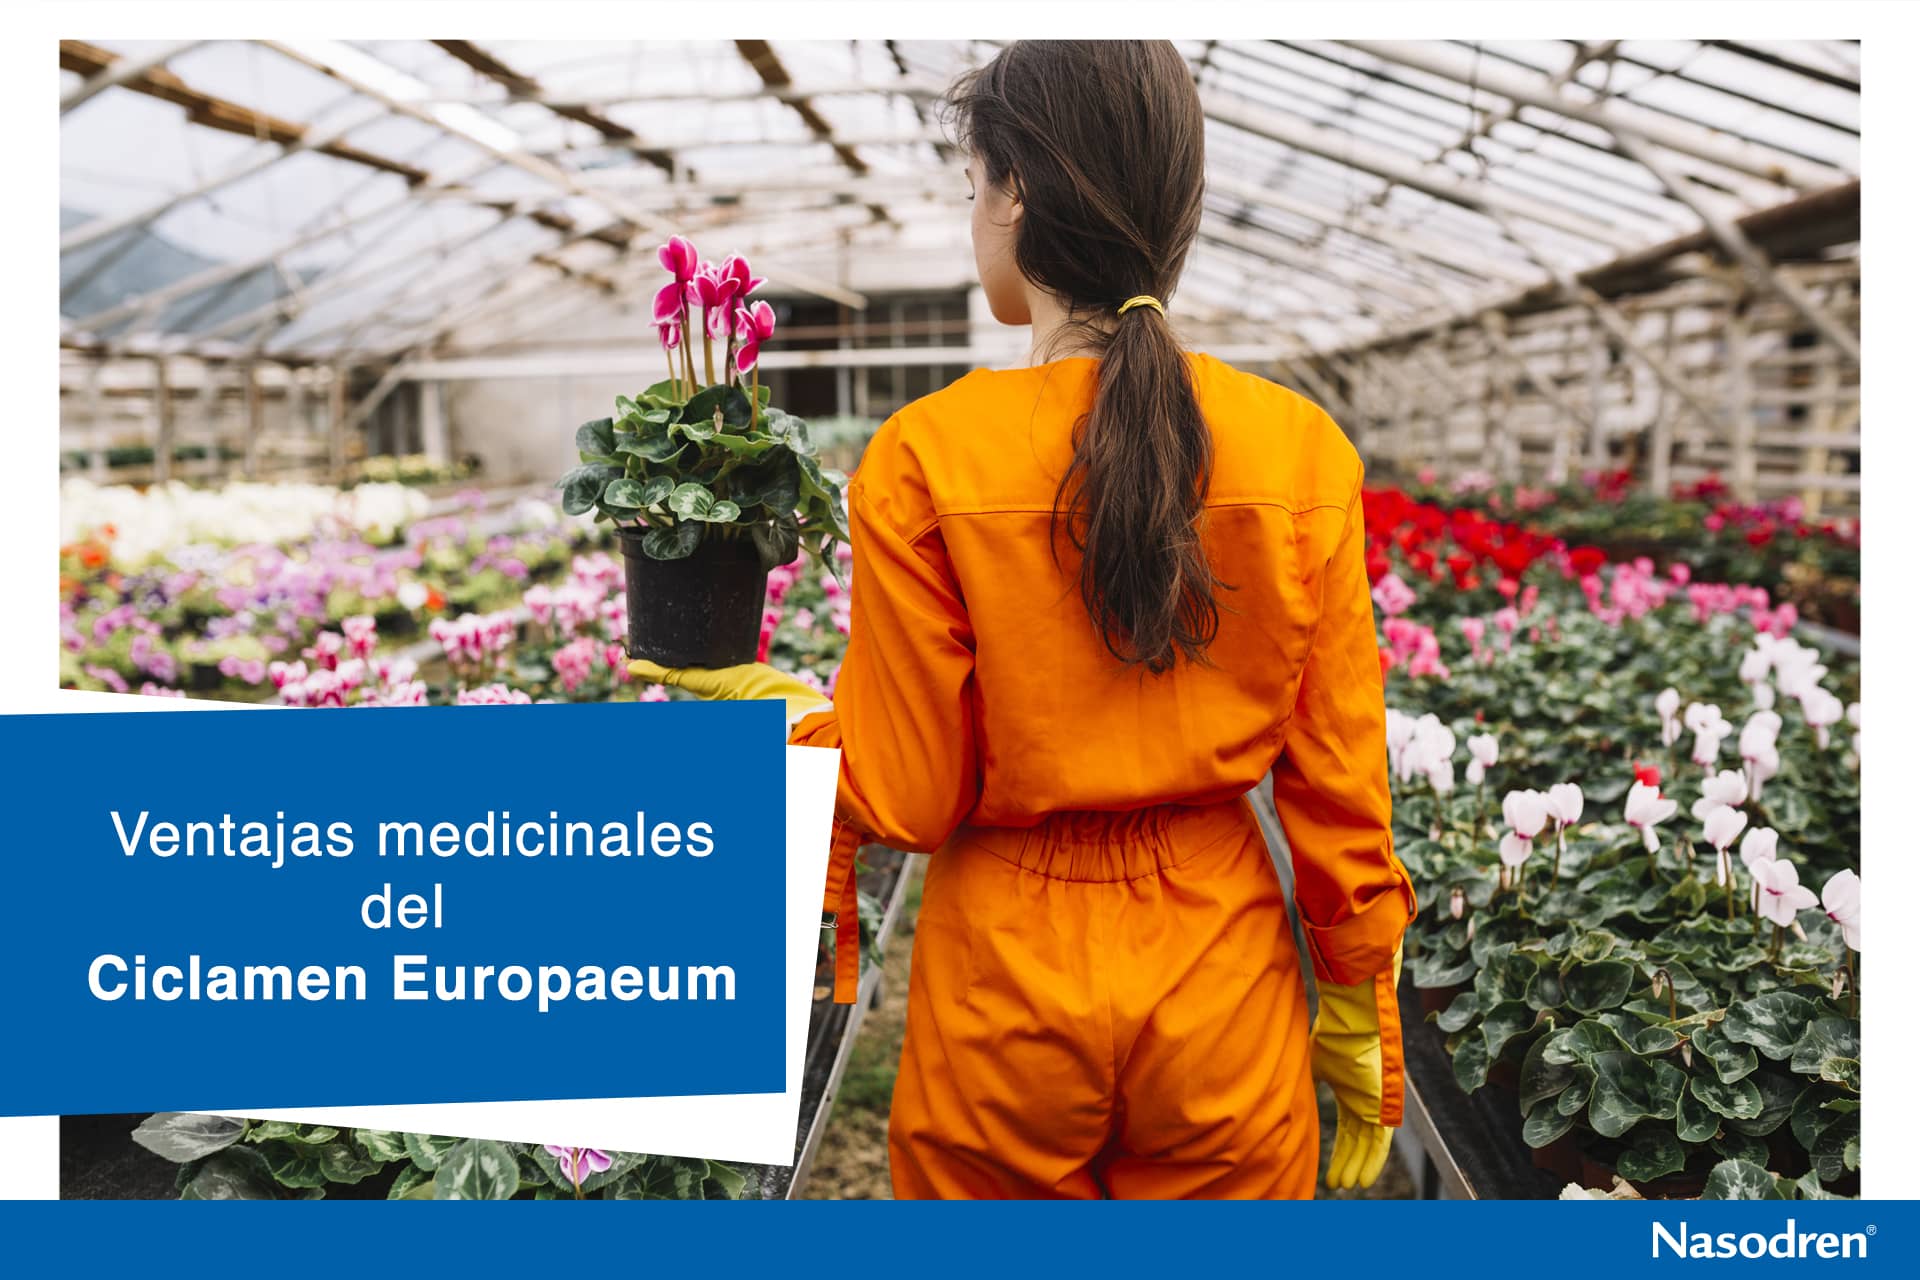 cultivo de ciclamen europaeum para uso medicinal